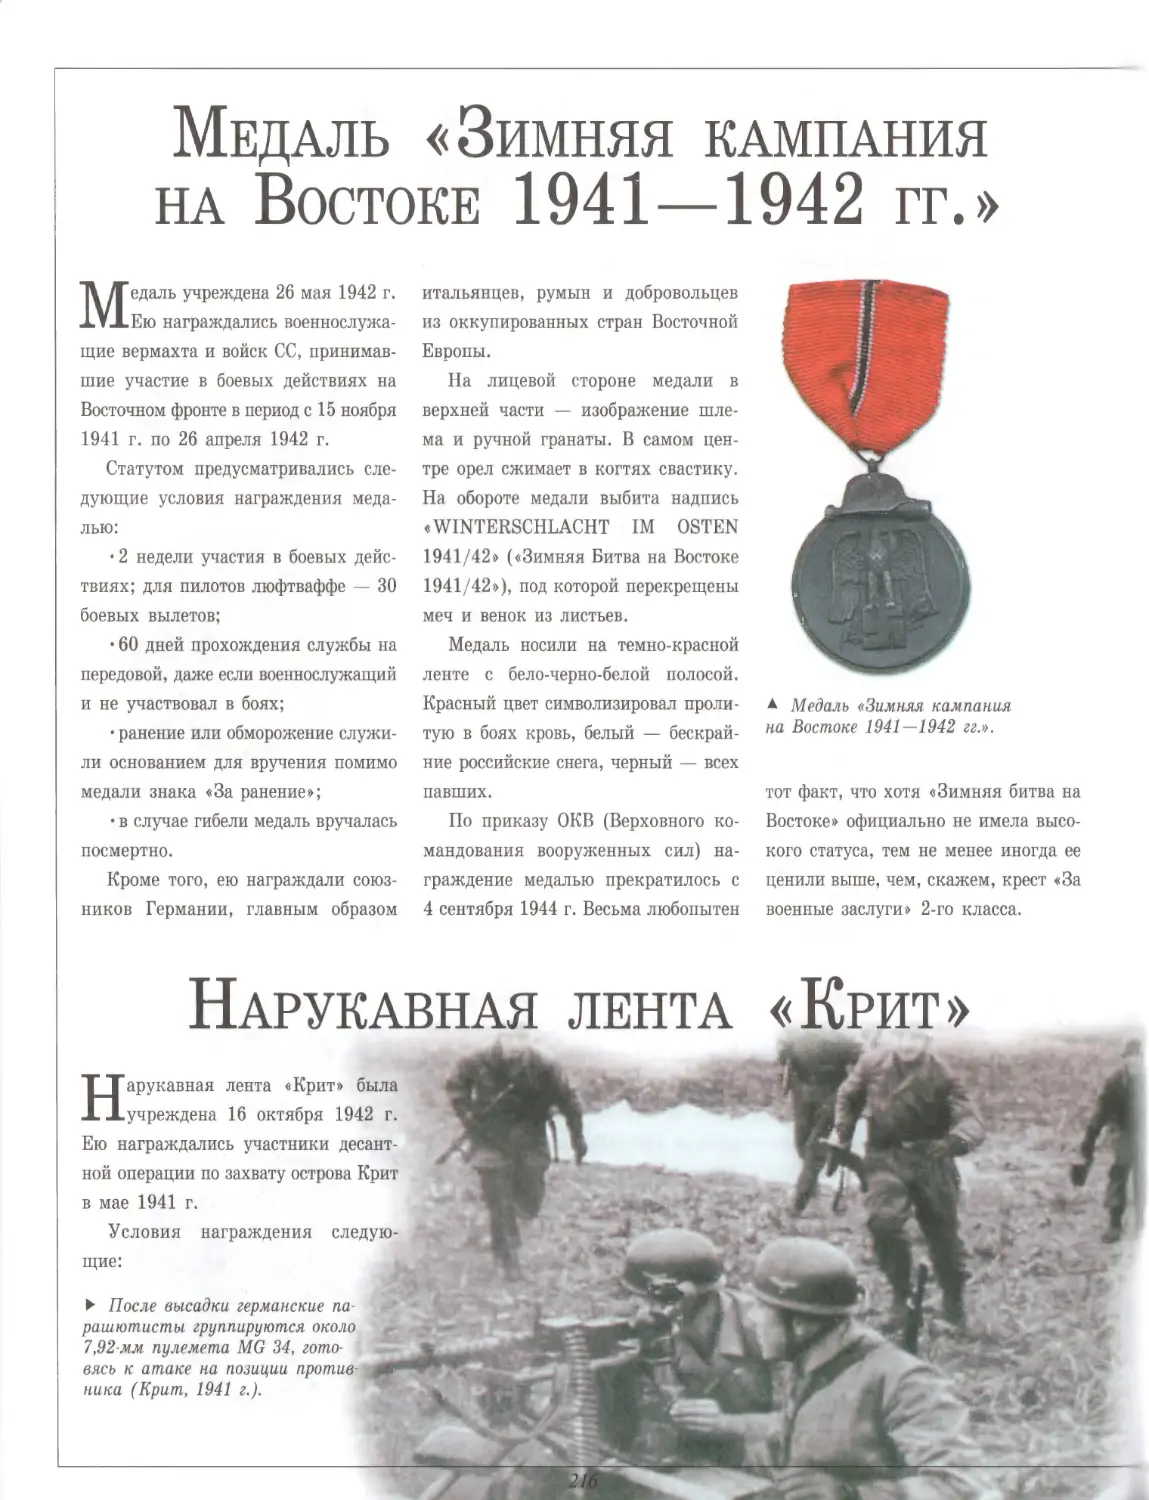 Медаль «Зимняя кампания на Востоке 1941—1942 гг.»
Нарукавная лента «Крит»